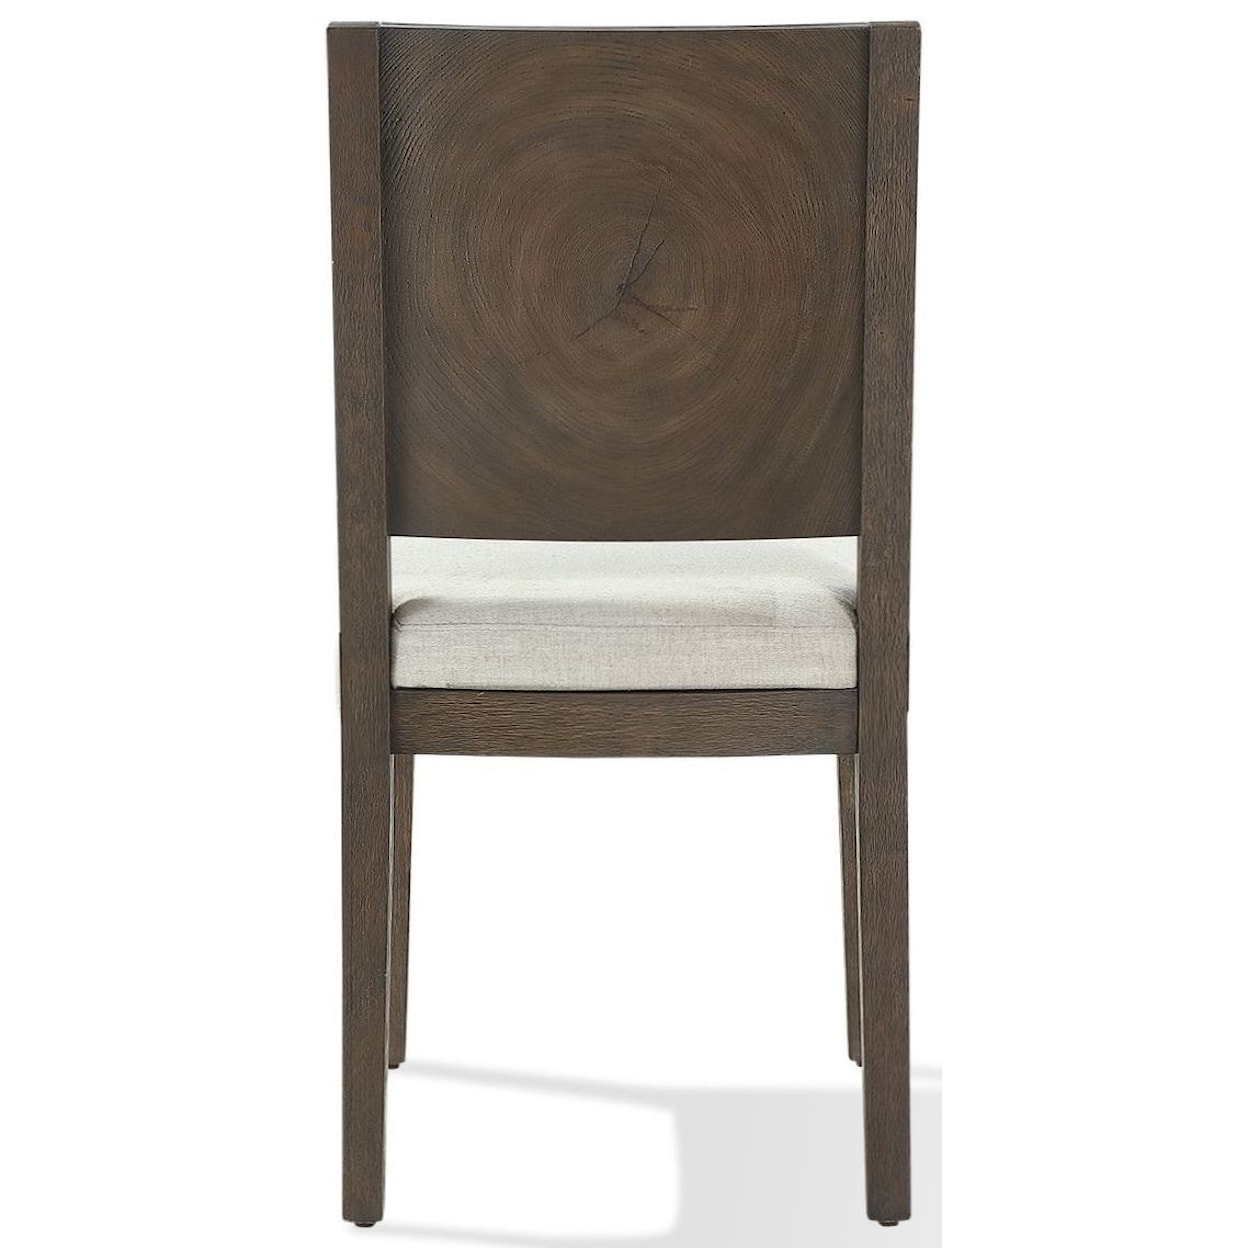 Modus International Oakland Wood Side Chair in Brunette